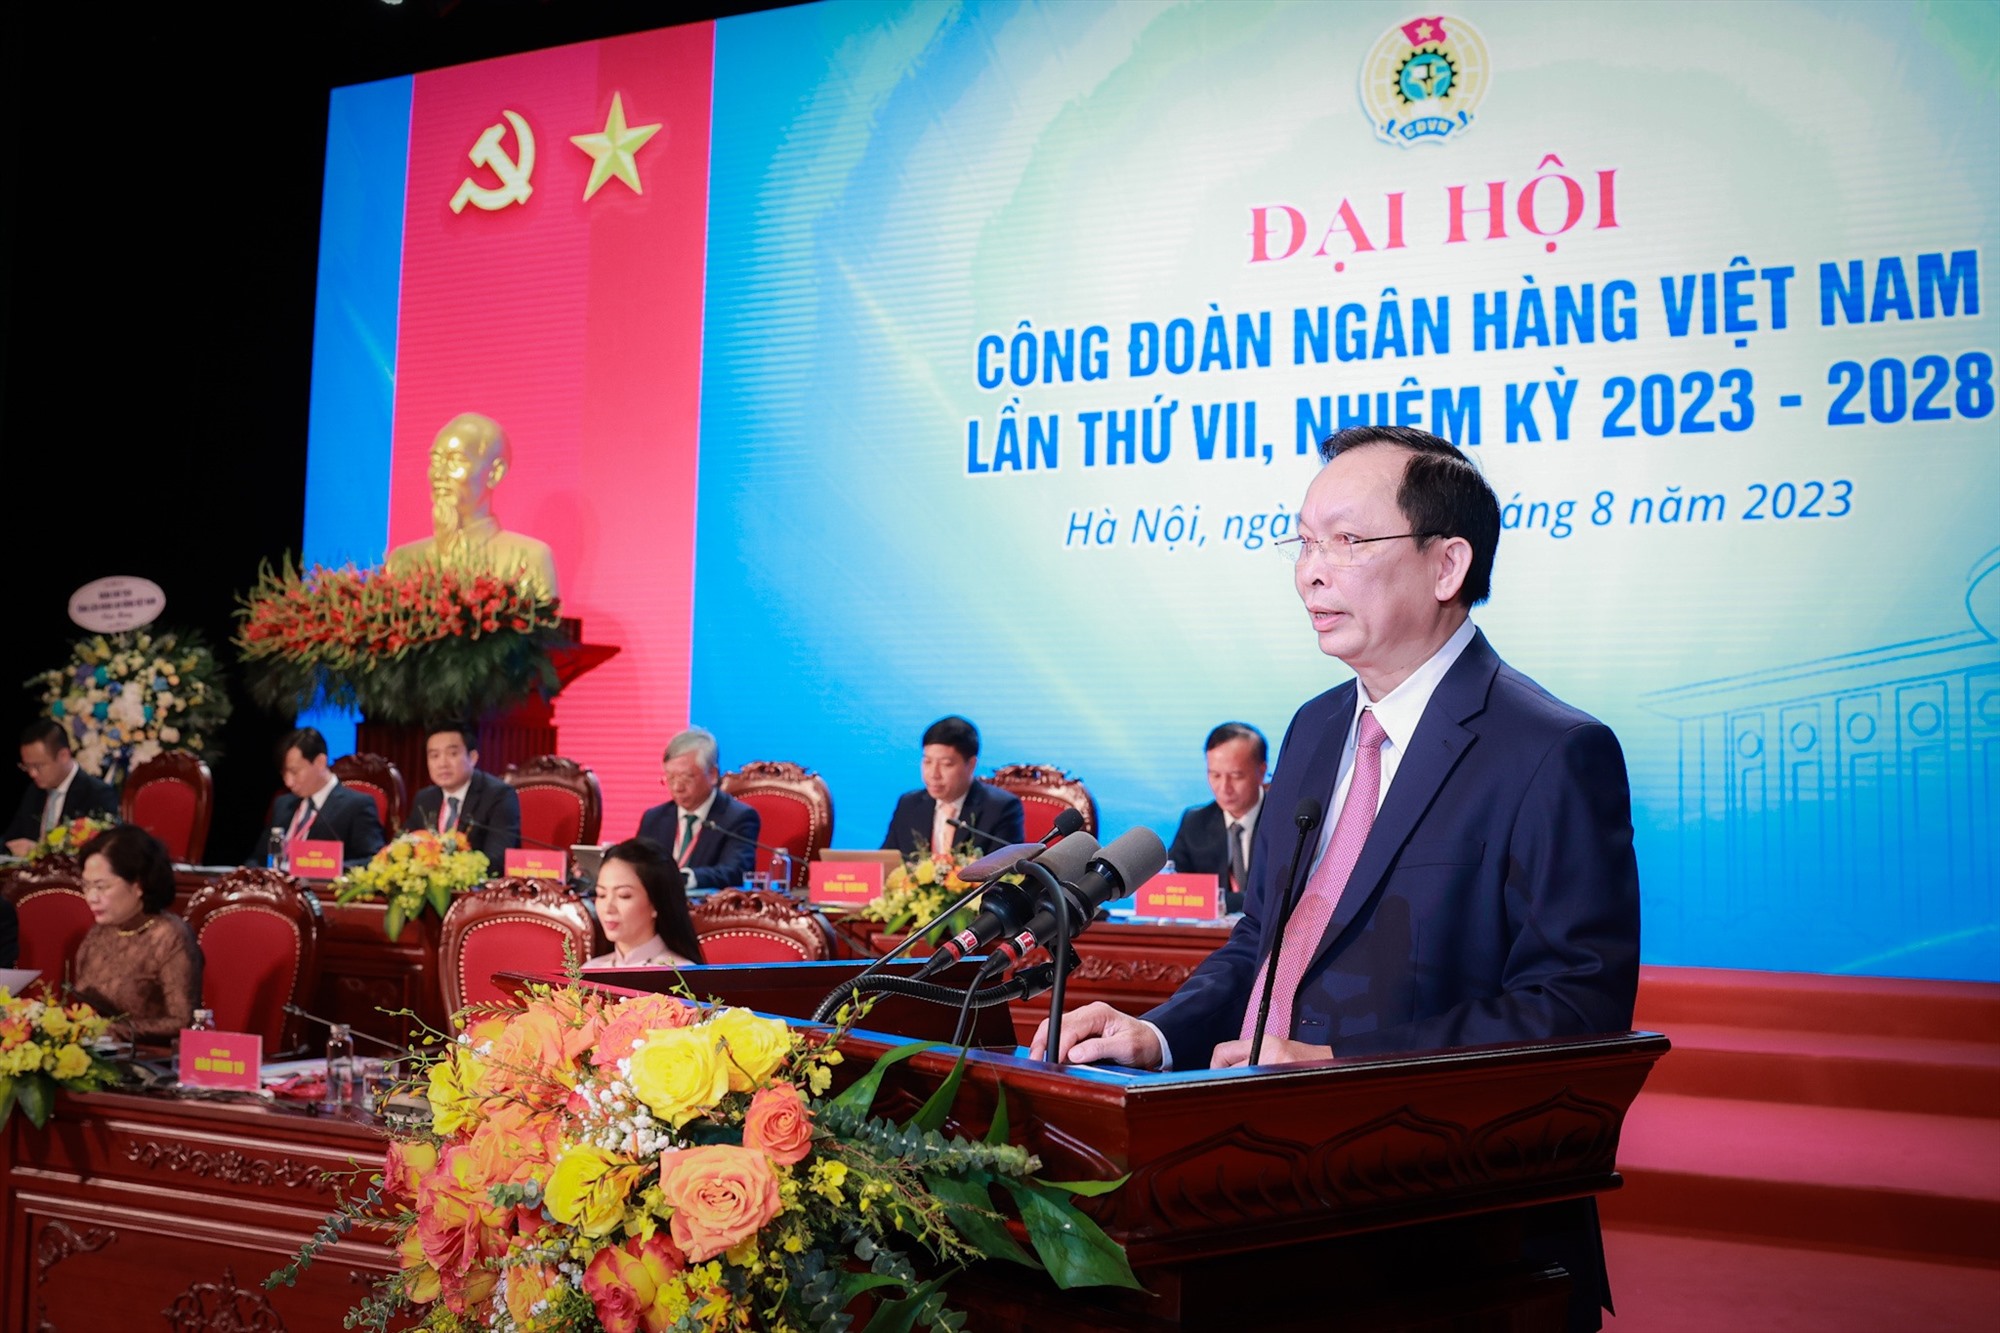 Ông Đào Minh Tú phát biểu khai mạc Đại hội VII Công đoàn Ngân hàng Việt Nam, nhiệm kỳ 2023 - 2028. Ảnh: Hải Nguyễn